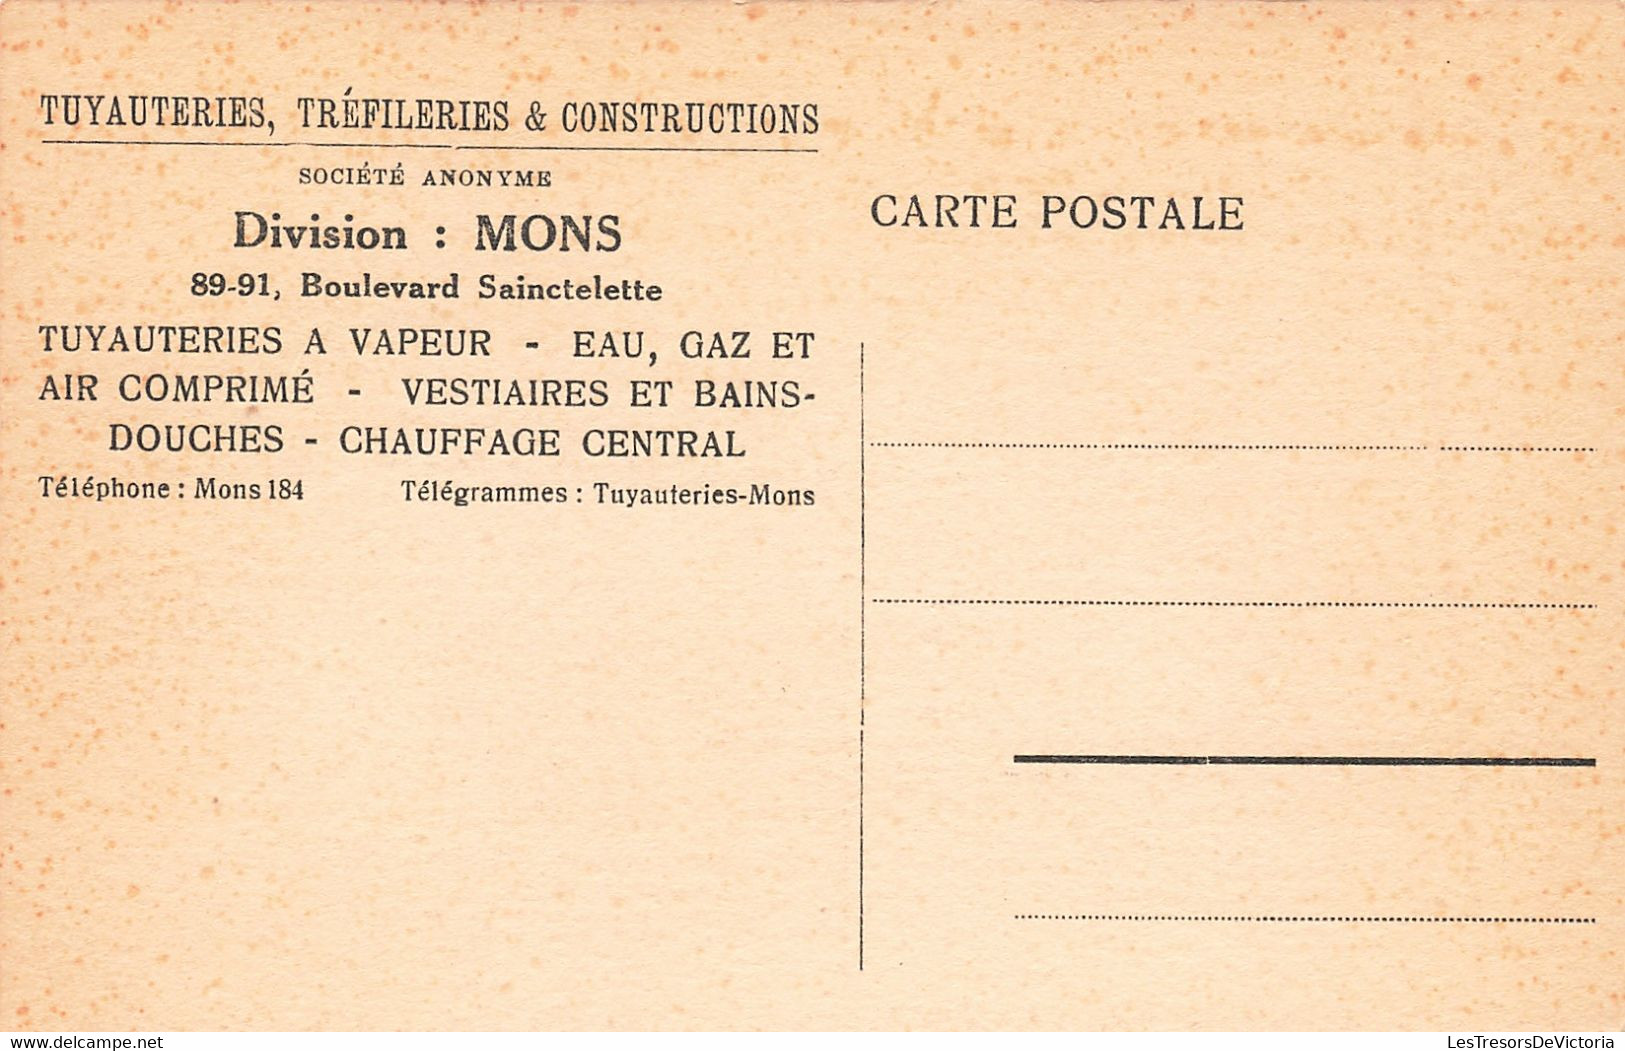 Belgique - Haine saint paul - Tuyauteries tréfileries et constructions - lot de 8 cartes - Carte postale ancienne